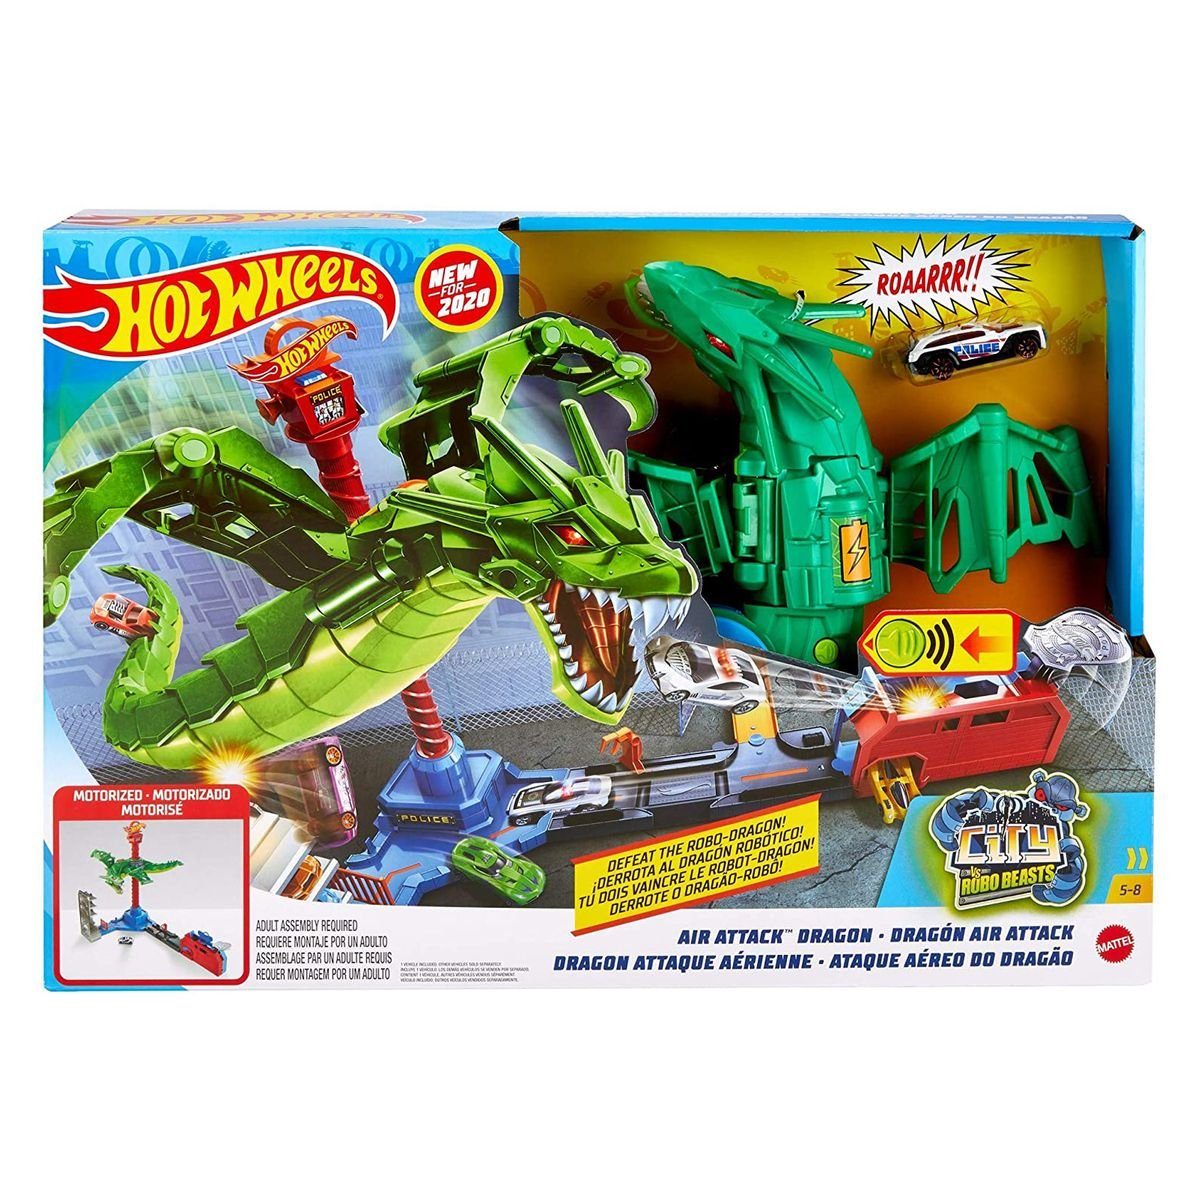 Mattel® Spielzeug-Auto Attack, GJL13 Mattel - - Hot Air Dragon Spielset, City Wheels